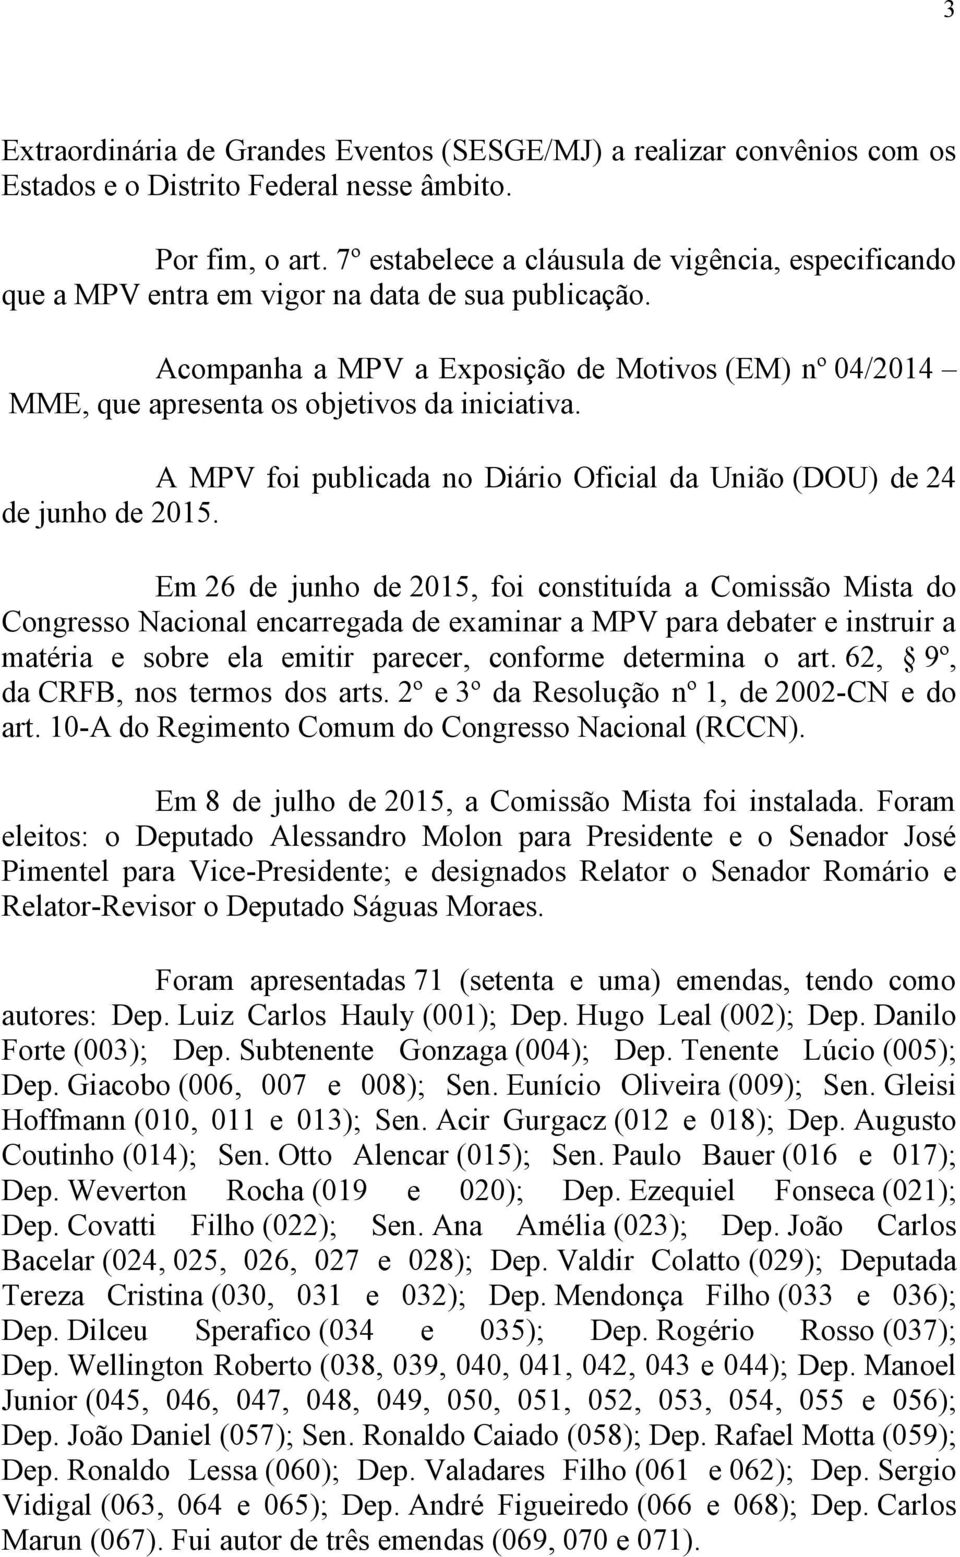 Acompanha a MPV a Exposição de Motivos (EM) nº 04/2014 MME, que apresenta os objetivos da iniciativa. A MPV foi publicada no Diário Oficial da União (DOU) de 24 de junho de 2015.